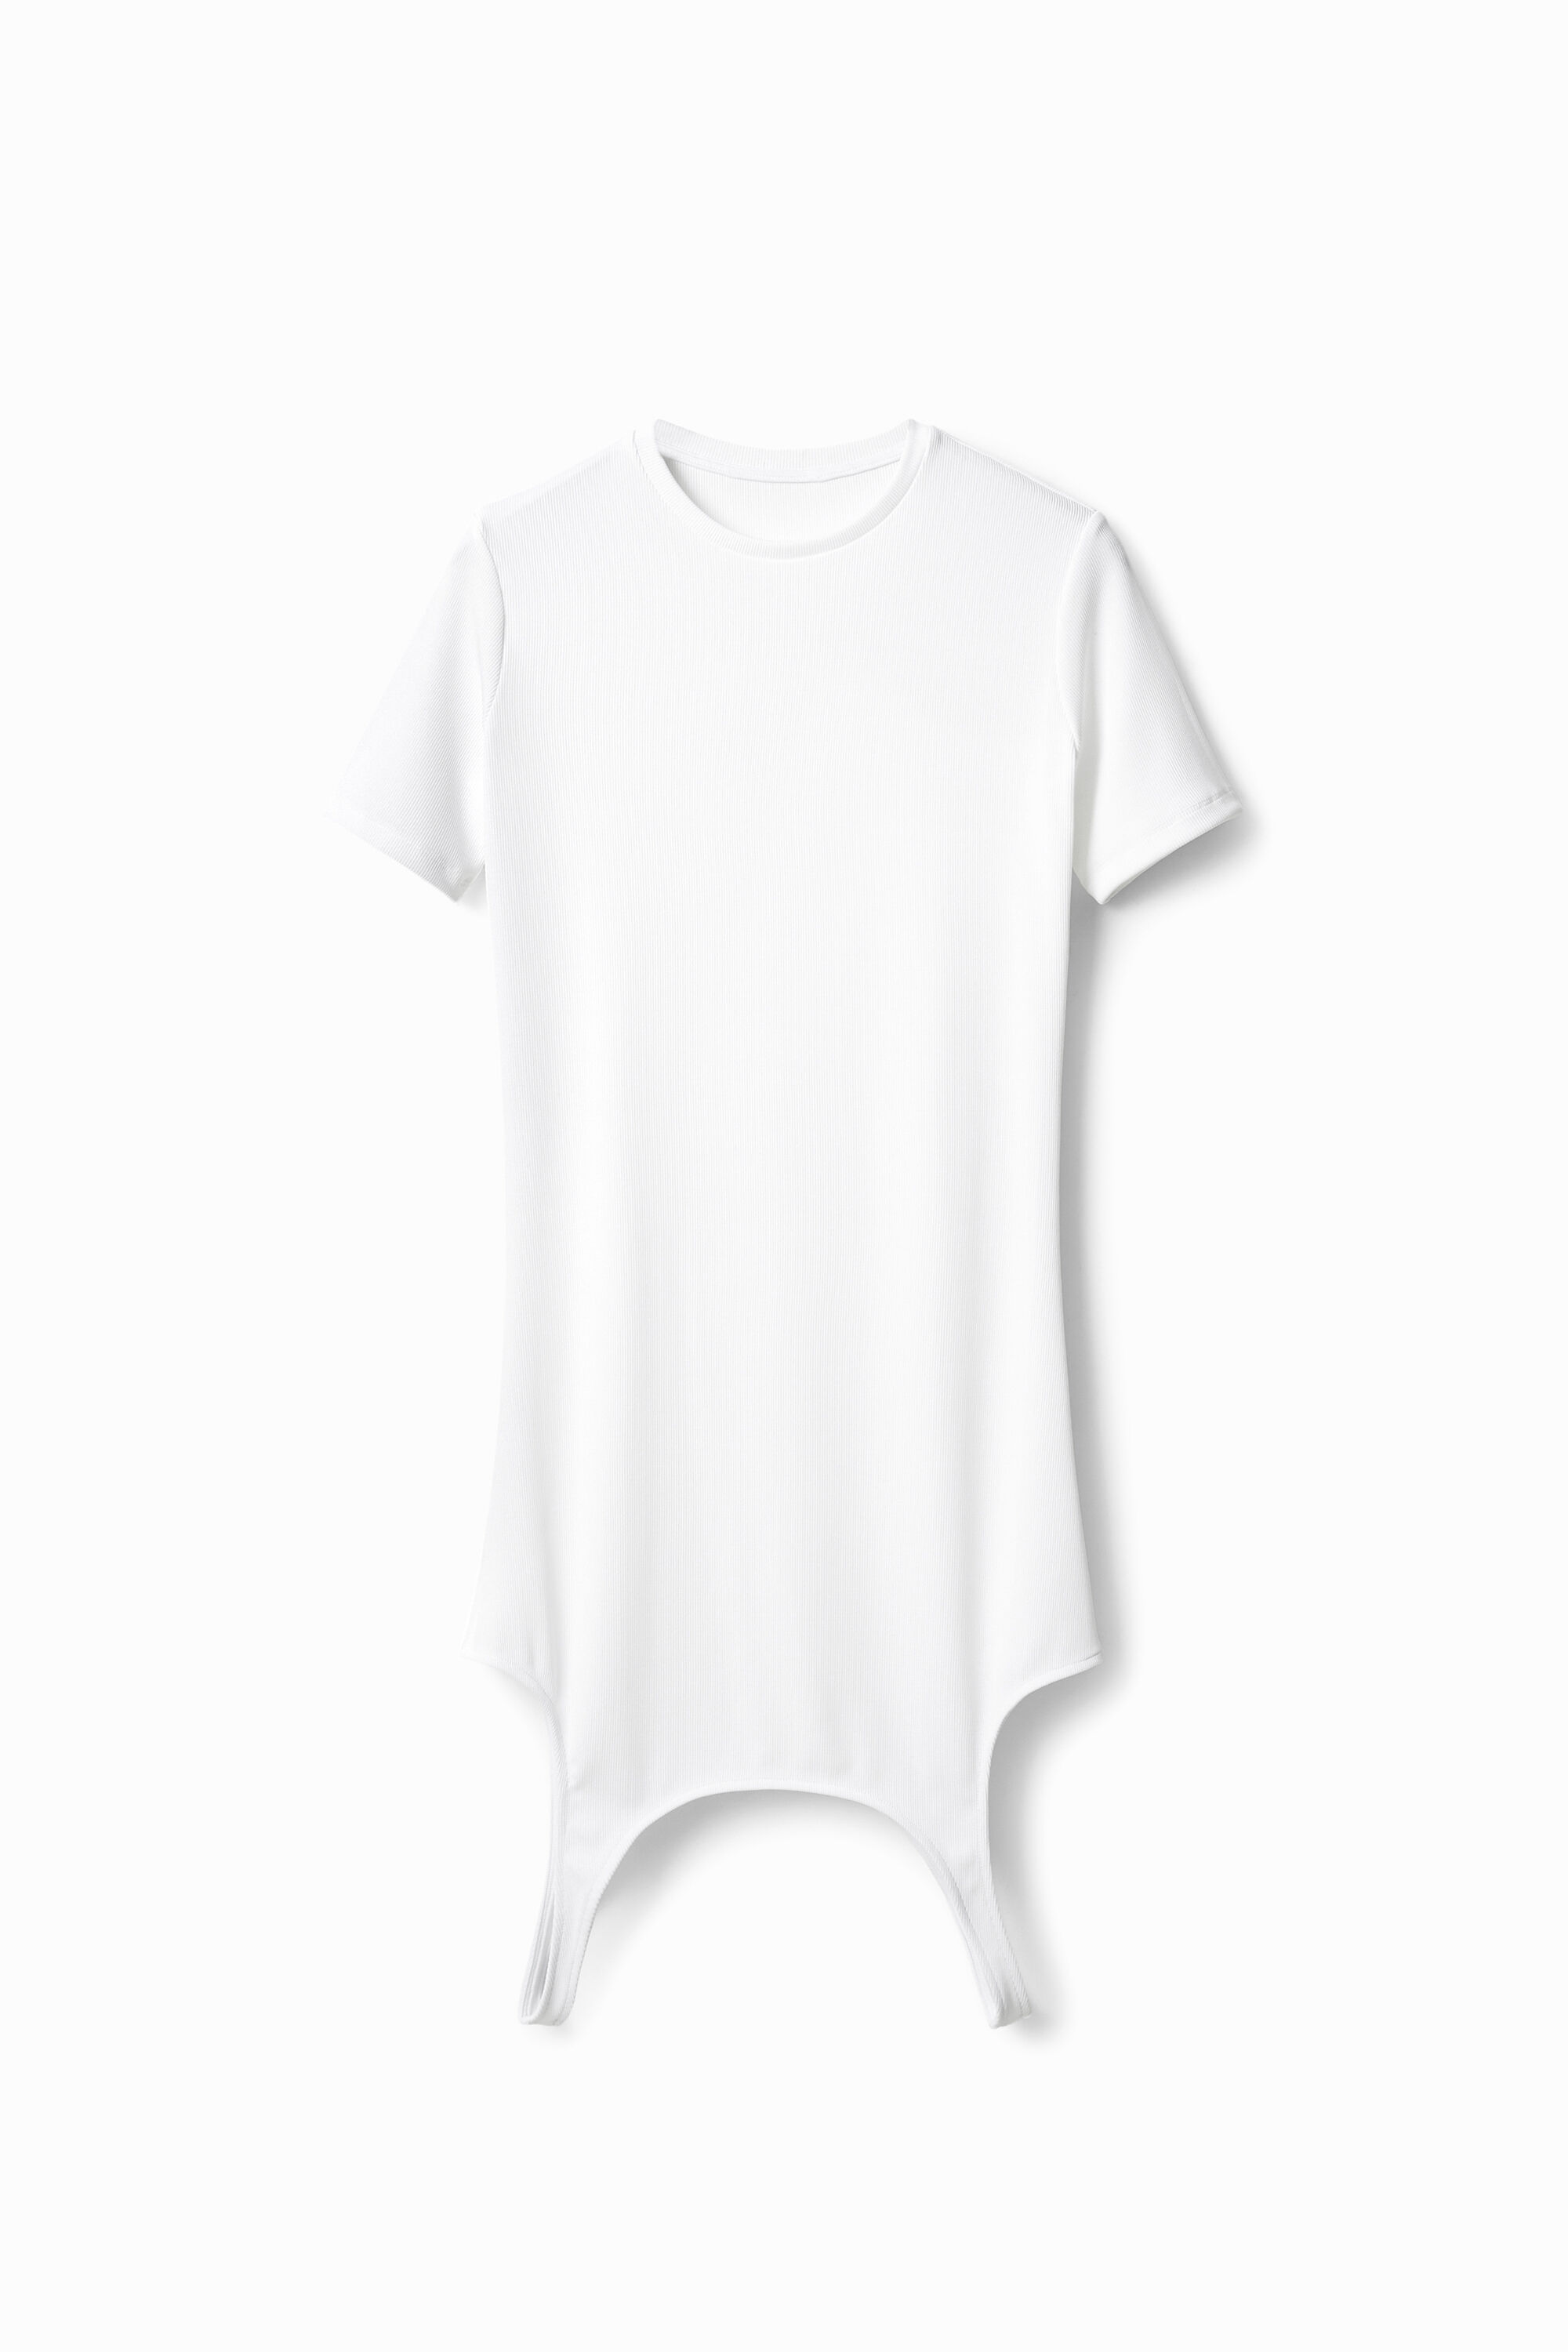 Maitrepierre multiposition T-shirt dress - WHITE - L